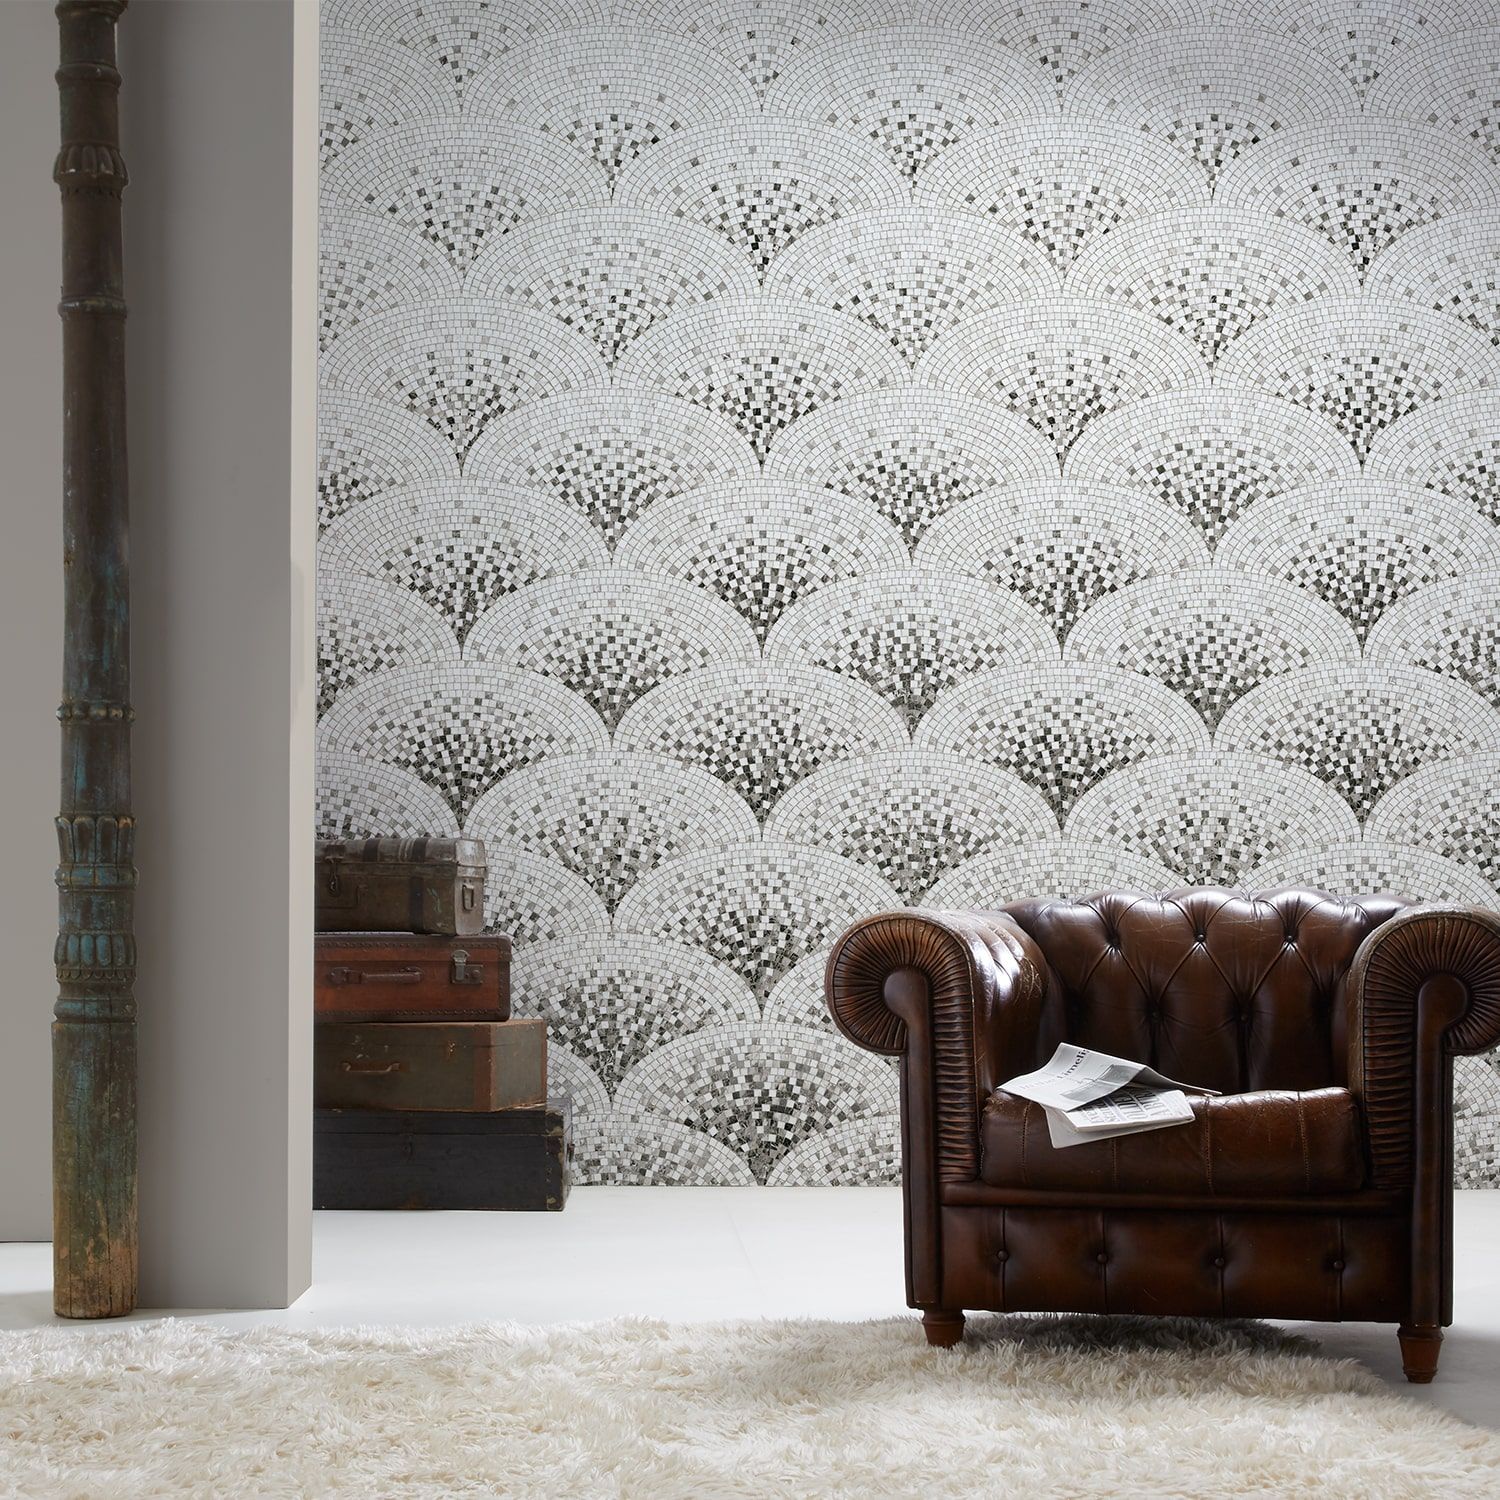 art deco wallpaper,wallpaper,wall,furniture,room,interior design